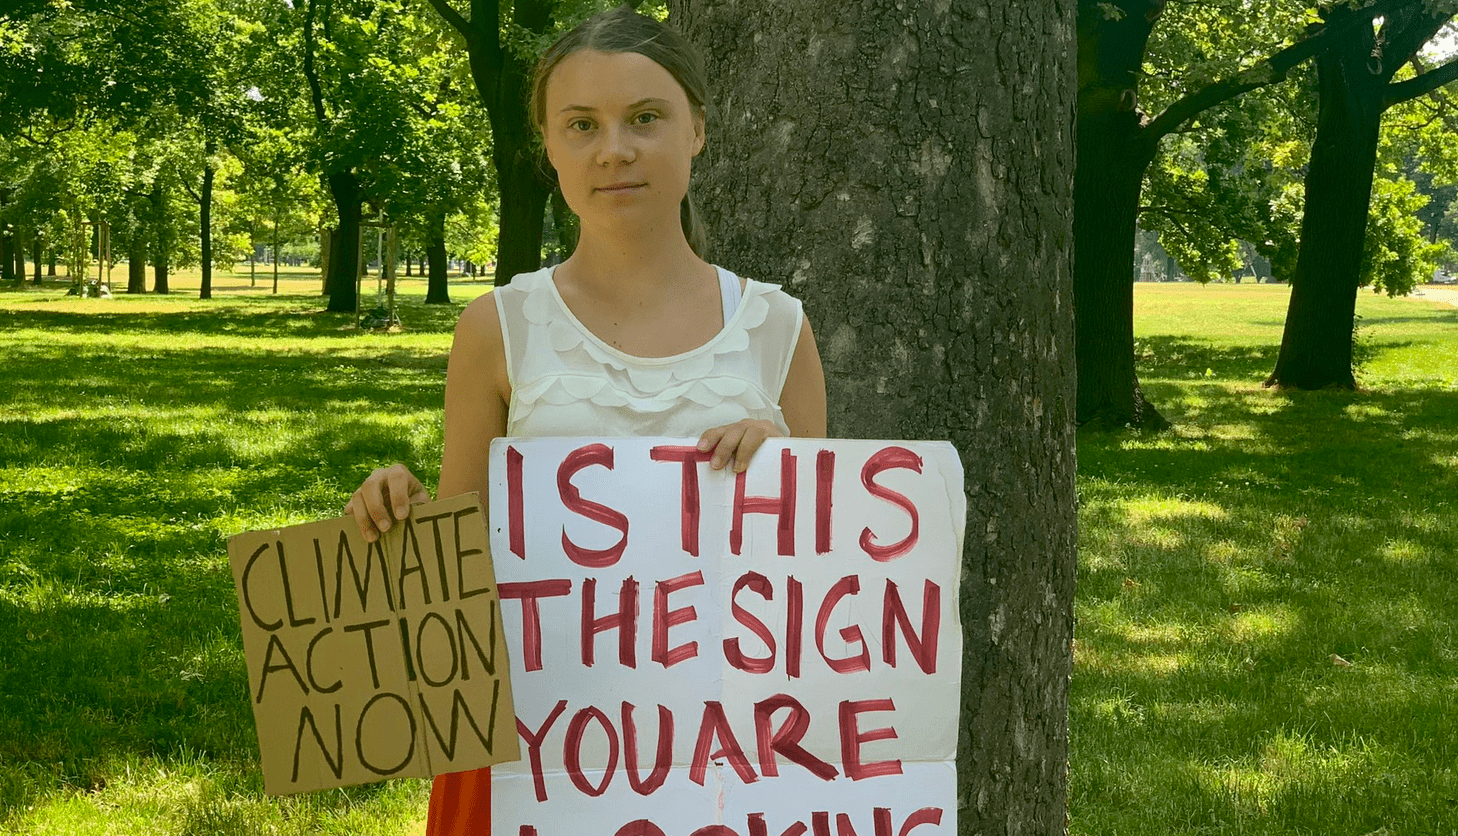 Record di caldo nel mondo e Greta Thunberg dice: "Azione per il clima adesso"